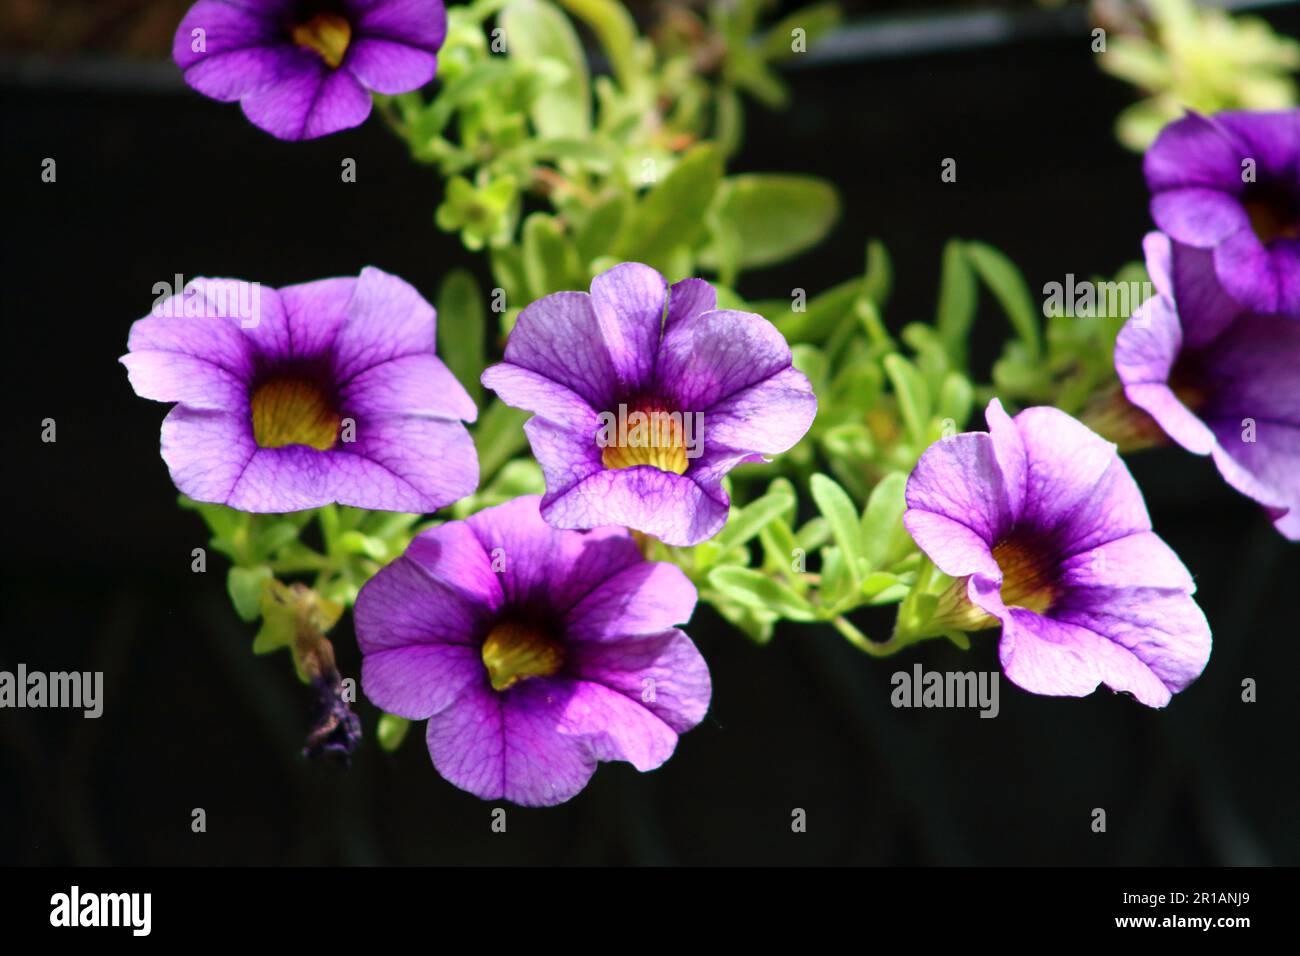 Purple Petunia flowers of the Spring Season Stock Photo